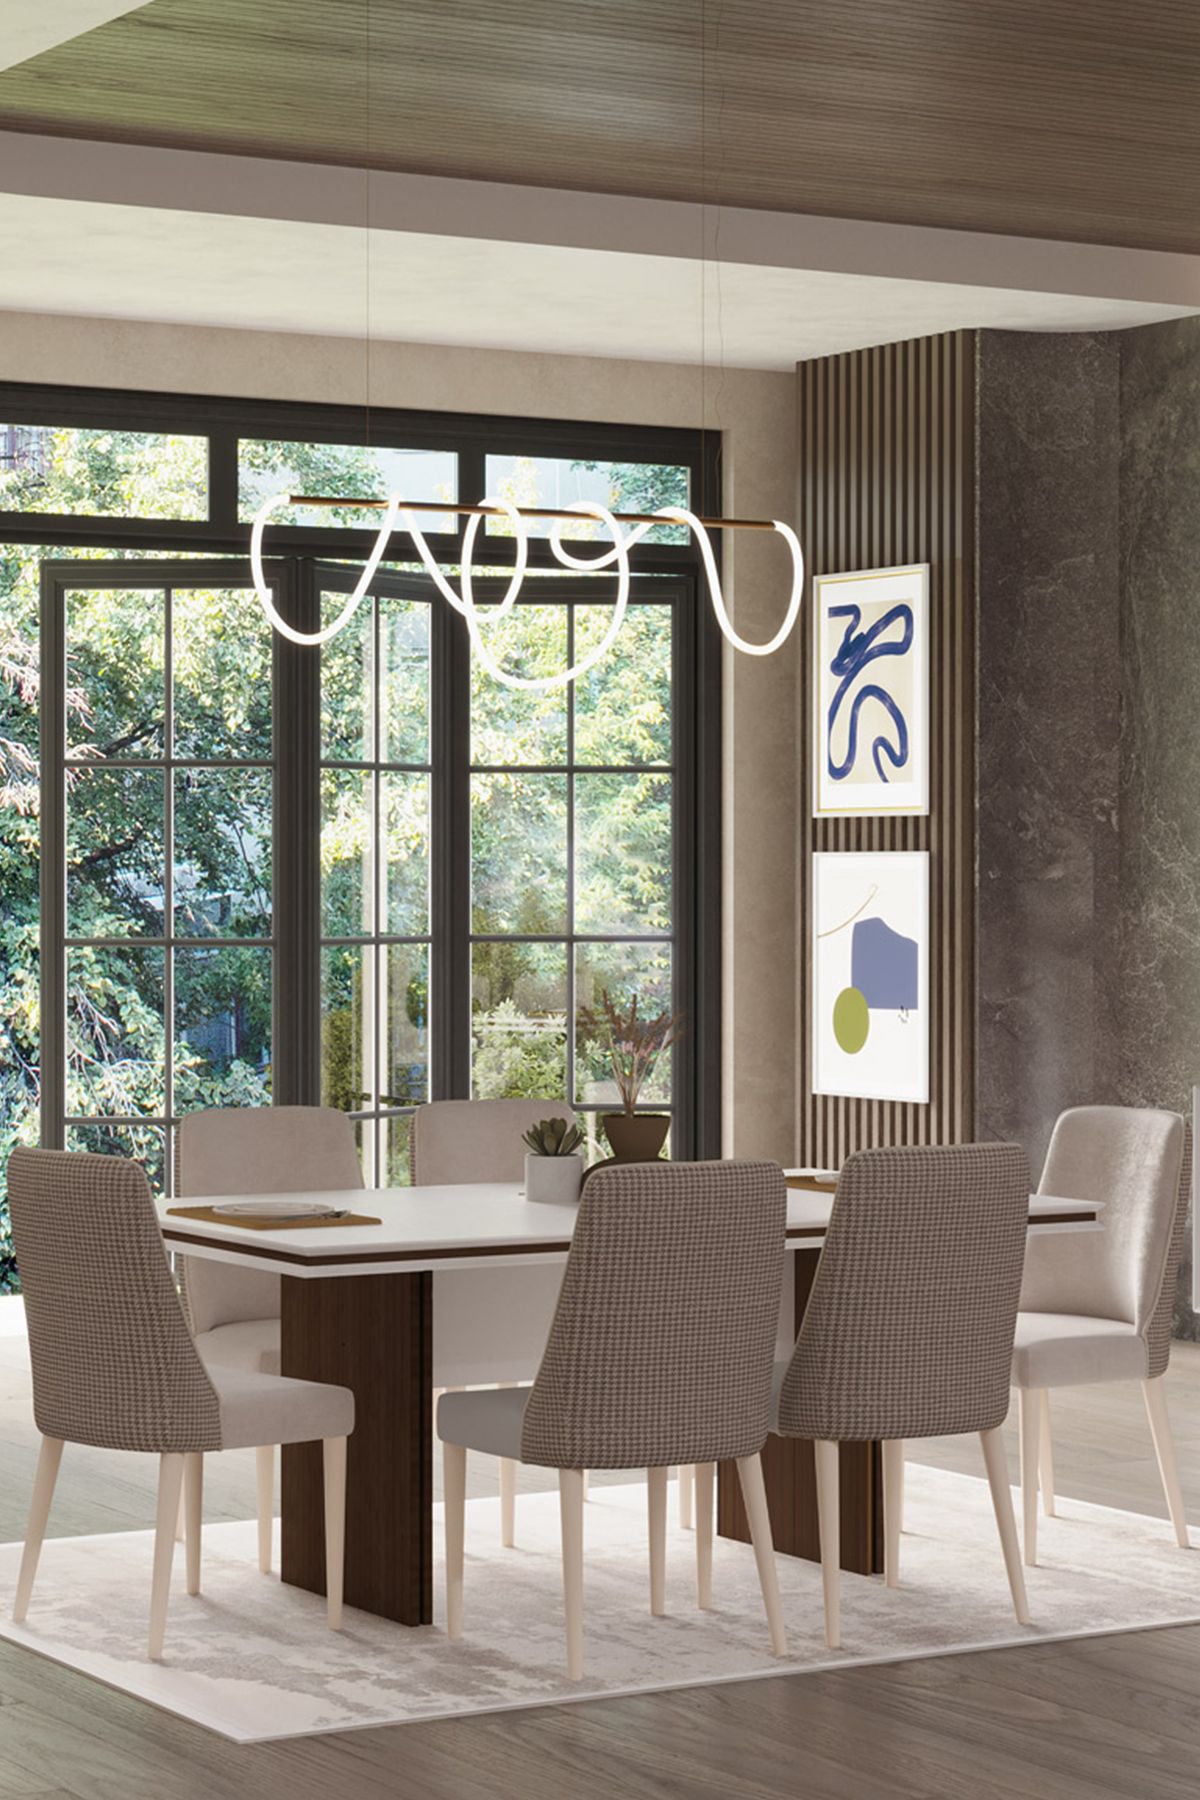 Modalife Linen 6 Sandalye 1 Sabit 180x100 cm Masa Yemek Masası Takımı 6 Kişilik - Vizon&Krem